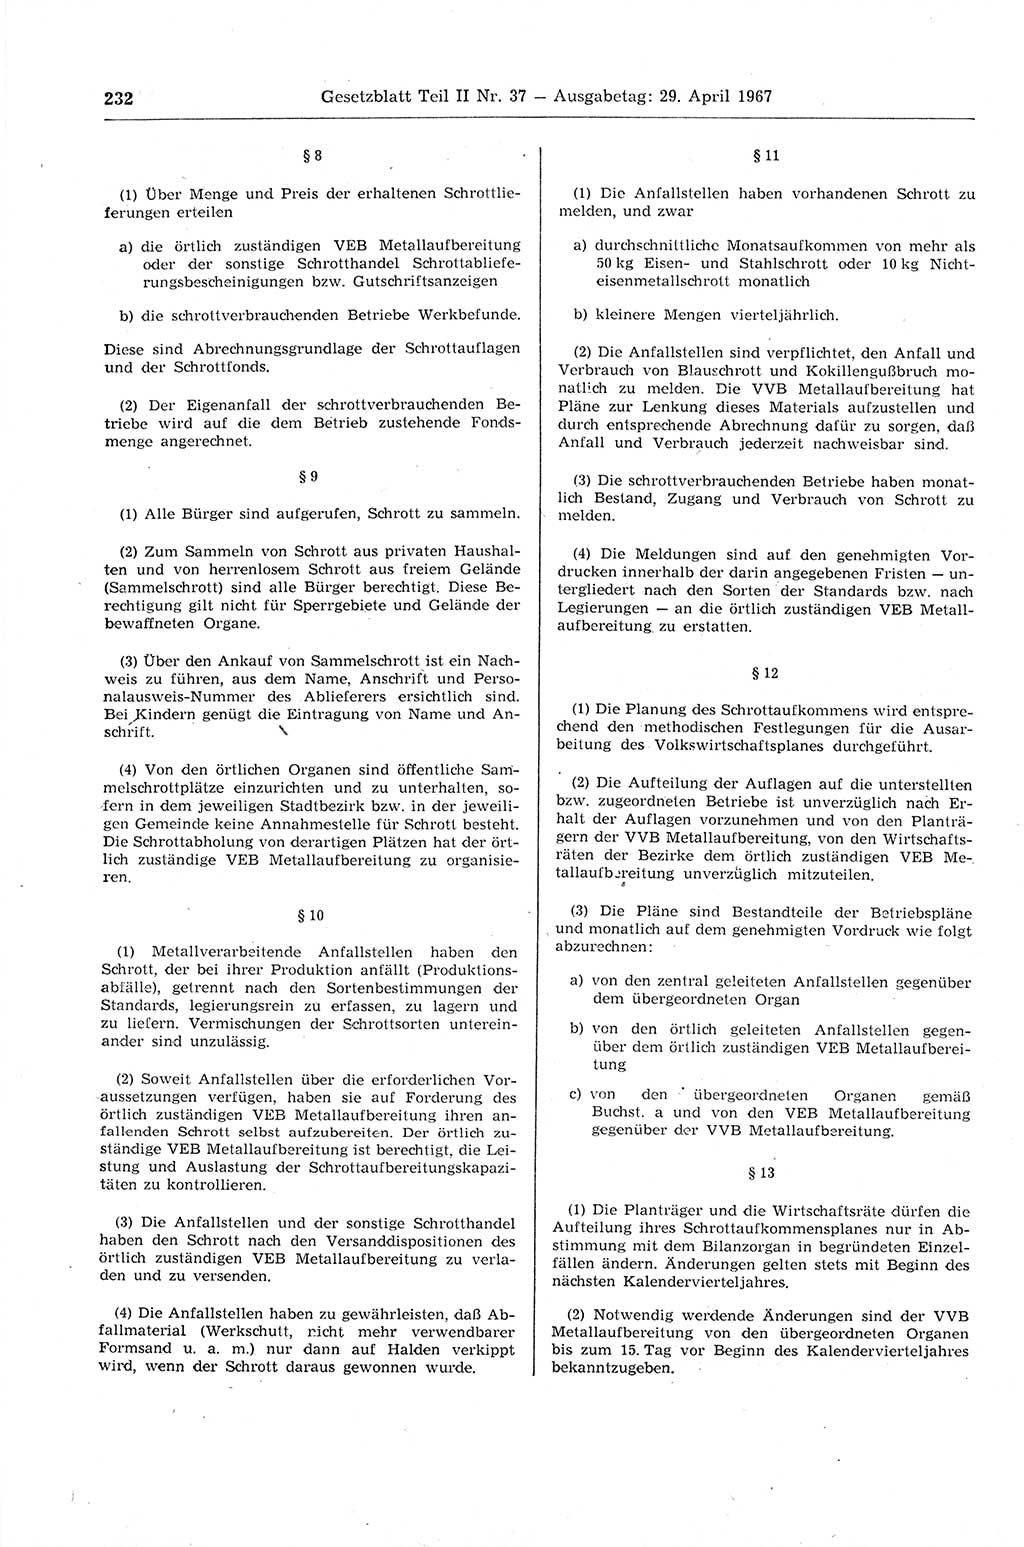 Gesetzblatt (GBl.) der Deutschen Demokratischen Republik (DDR) Teil ⅠⅠ 1967, Seite 232 (GBl. DDR ⅠⅠ 1967, S. 232)